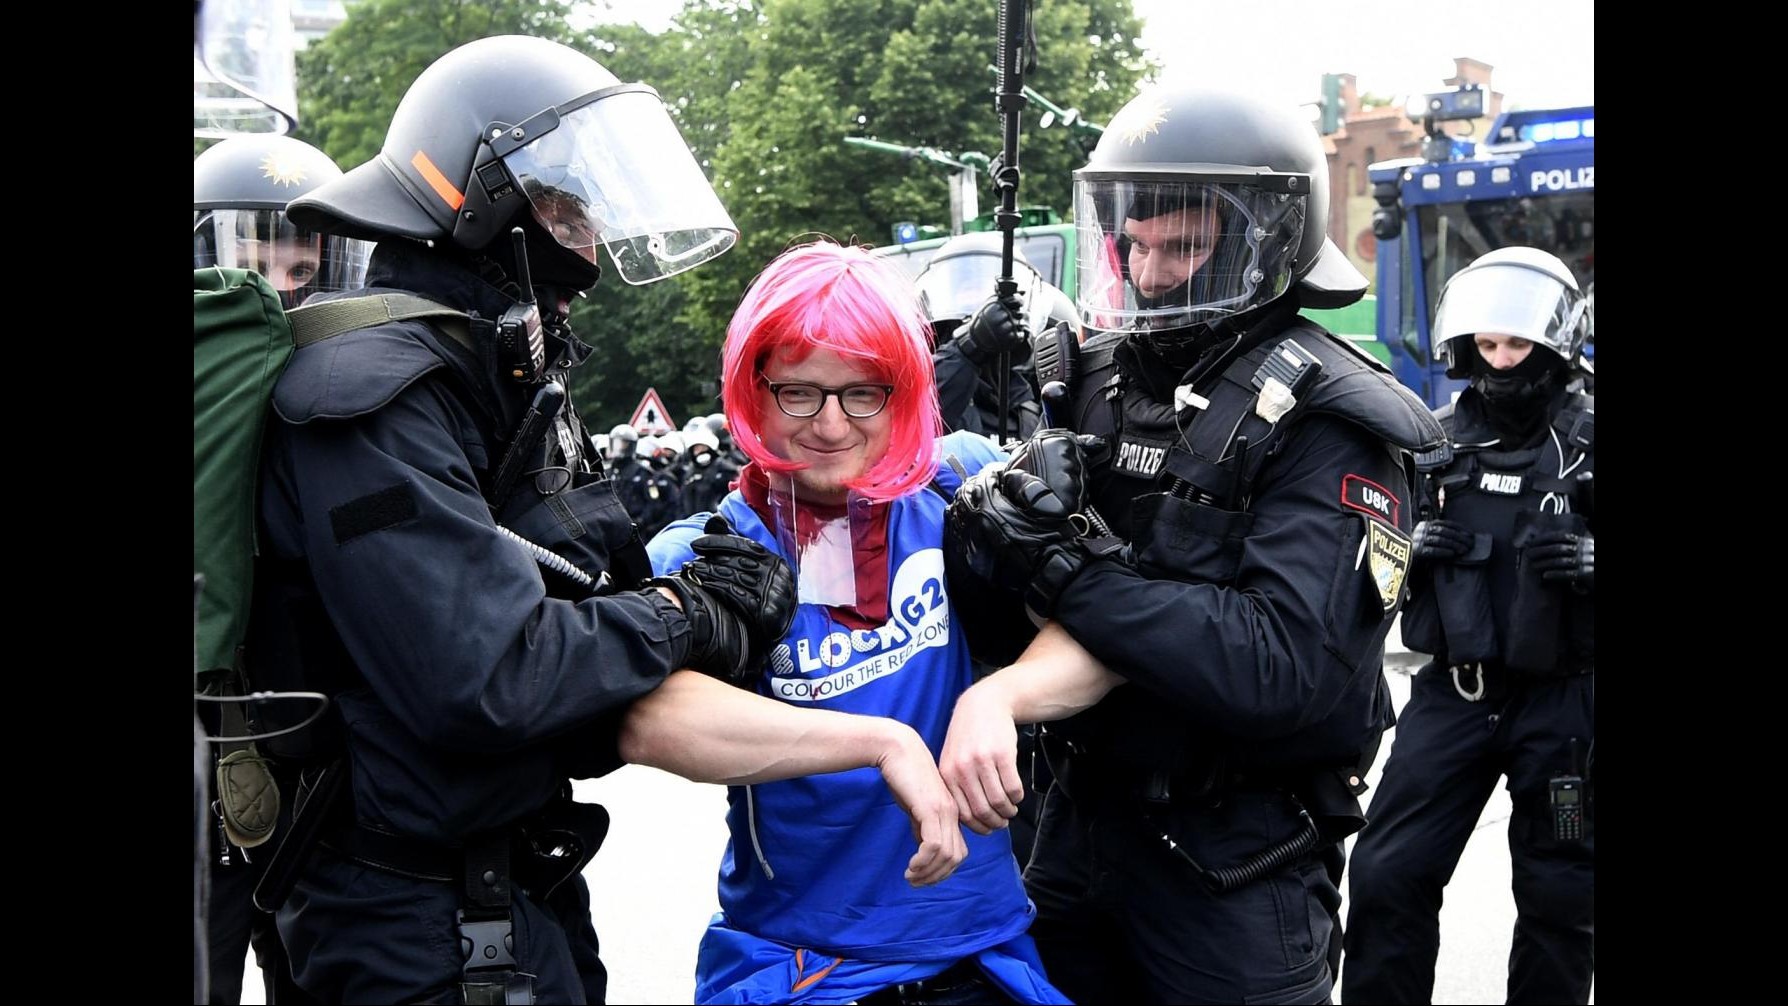 FOTO G20, proteste e scontri ad Amburgo. Polizia chiede rinforzi